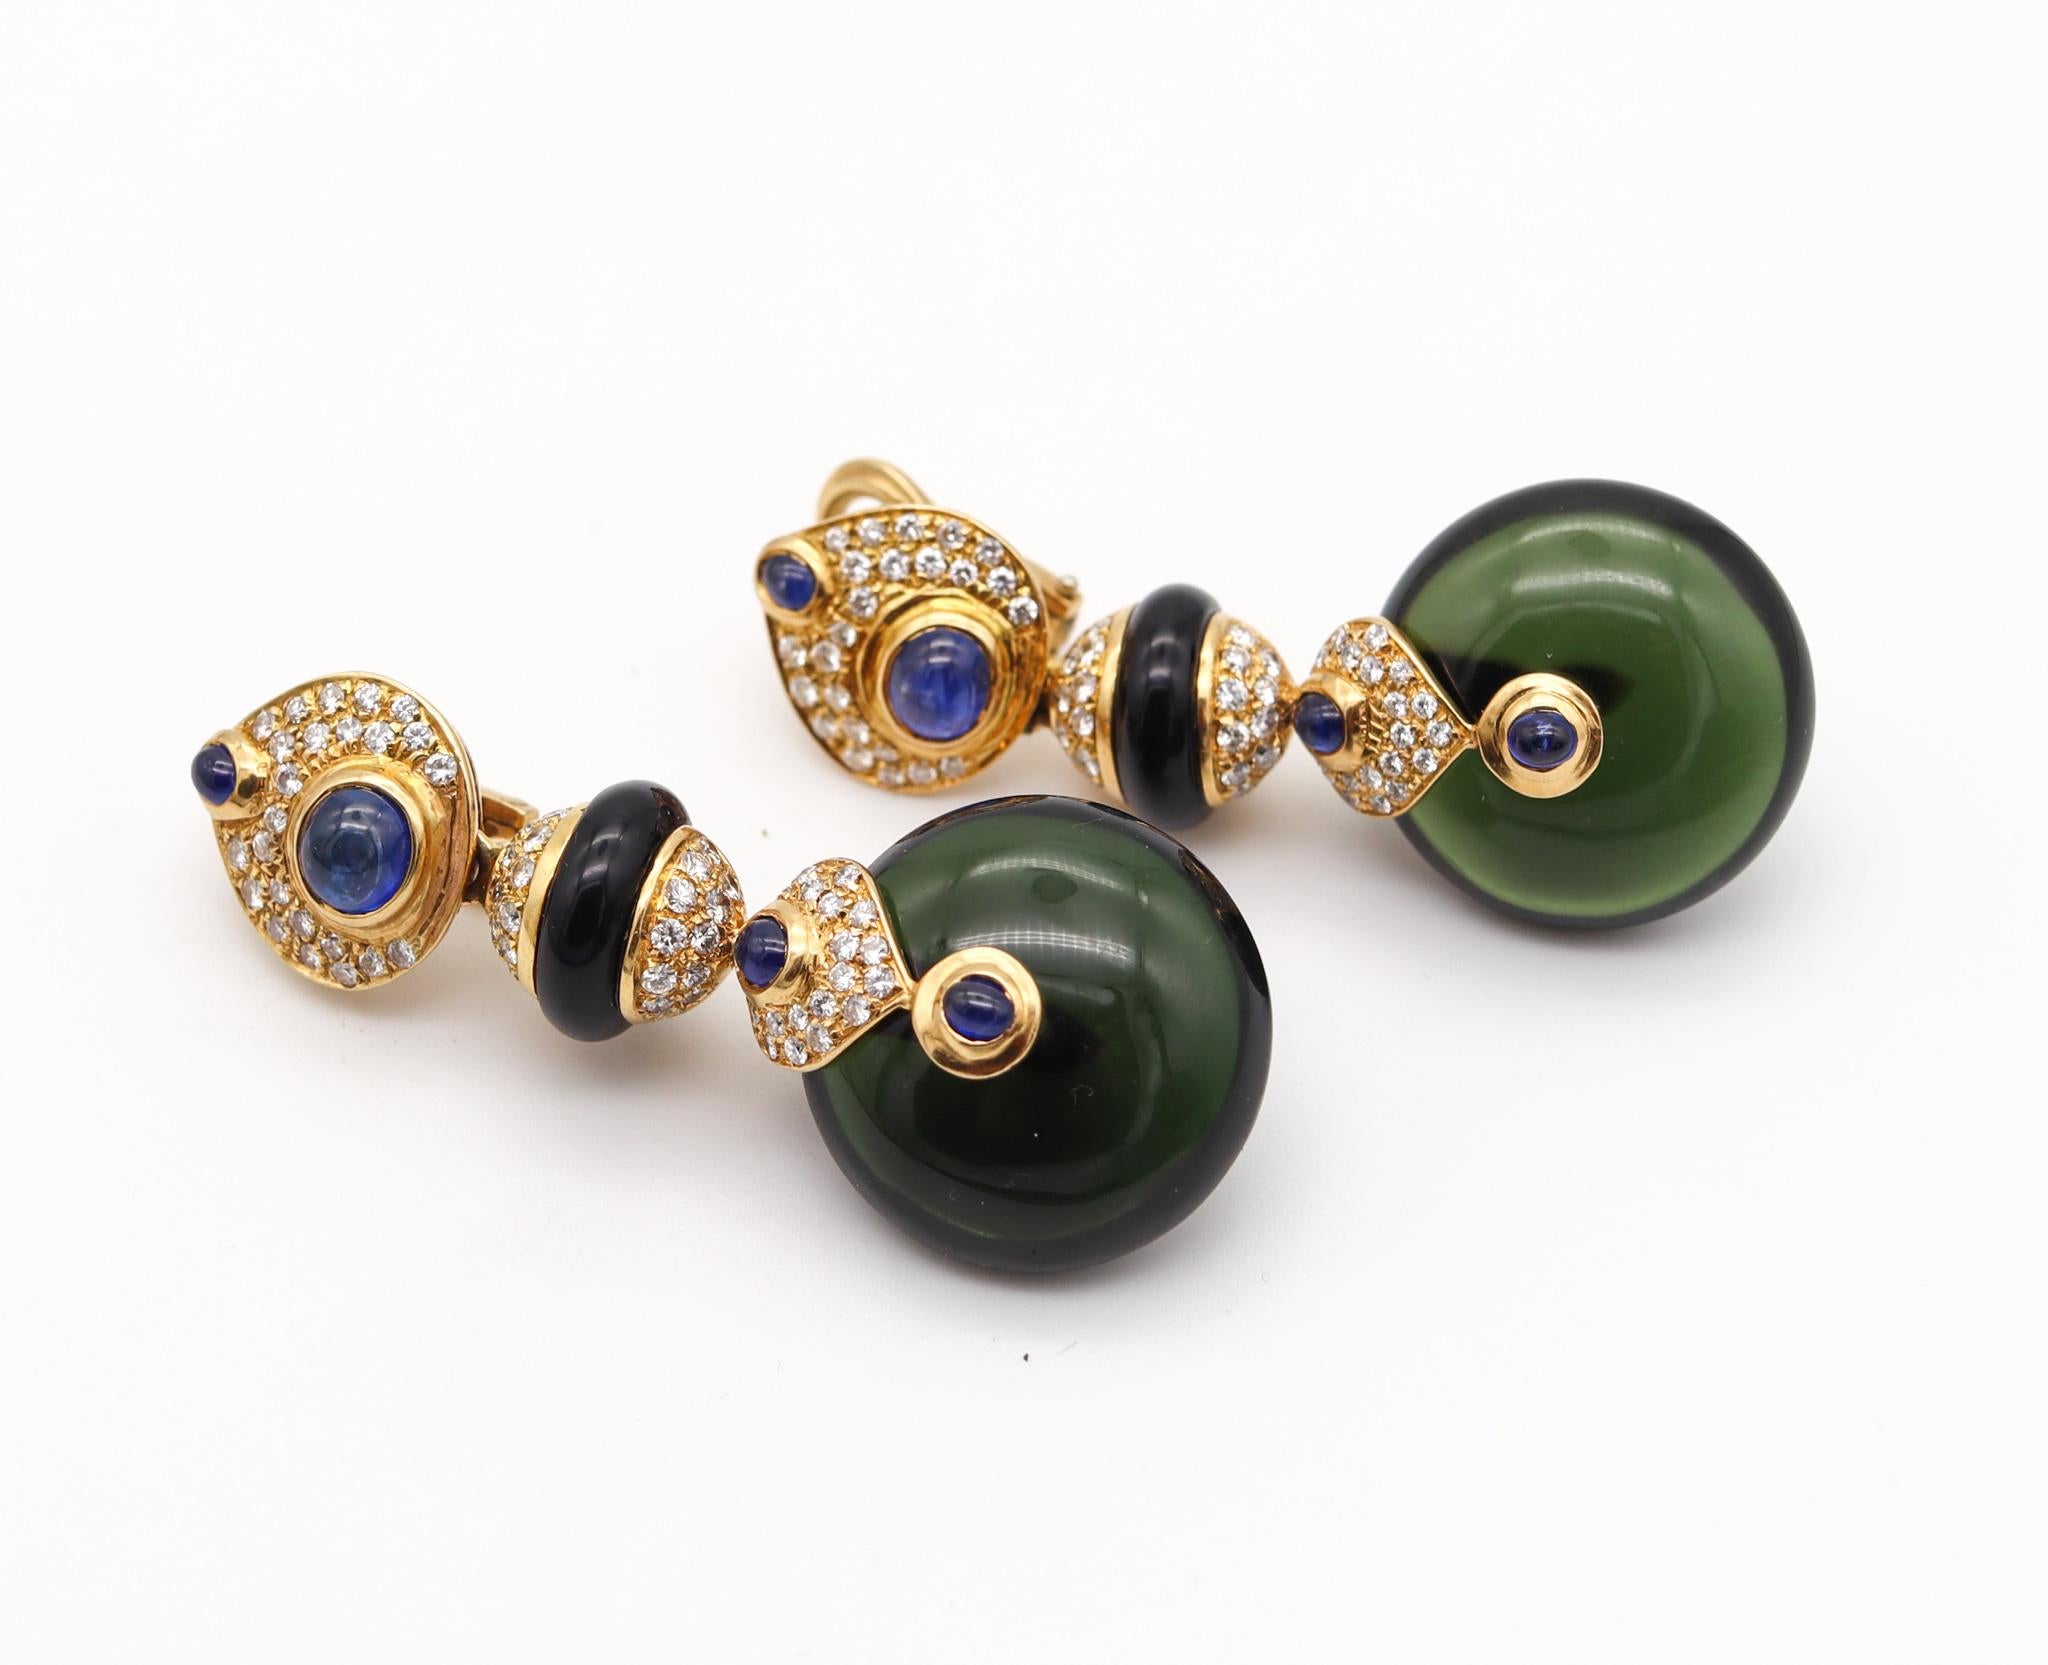 Women's Contemporary Italian Pneus Drop Earrings in 18Kt Gold 92.63 Ctw Diamonds & Gems